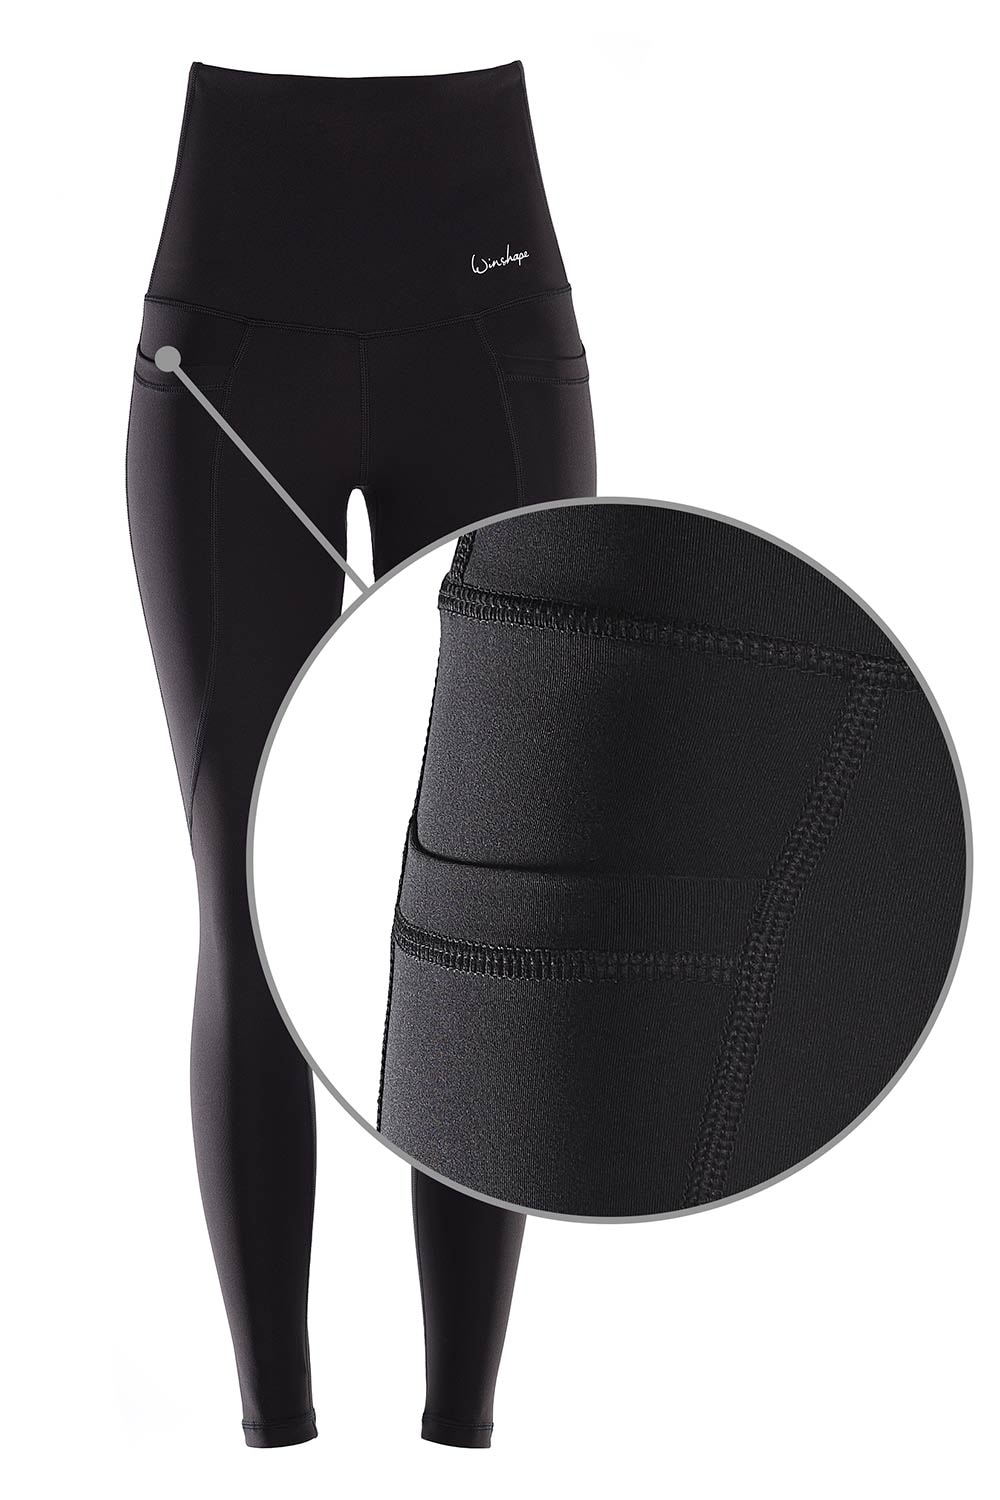 High HWL115C«, »Functional Taschen mit Waist Winshape Comfort Leggings praktischen online kaufen